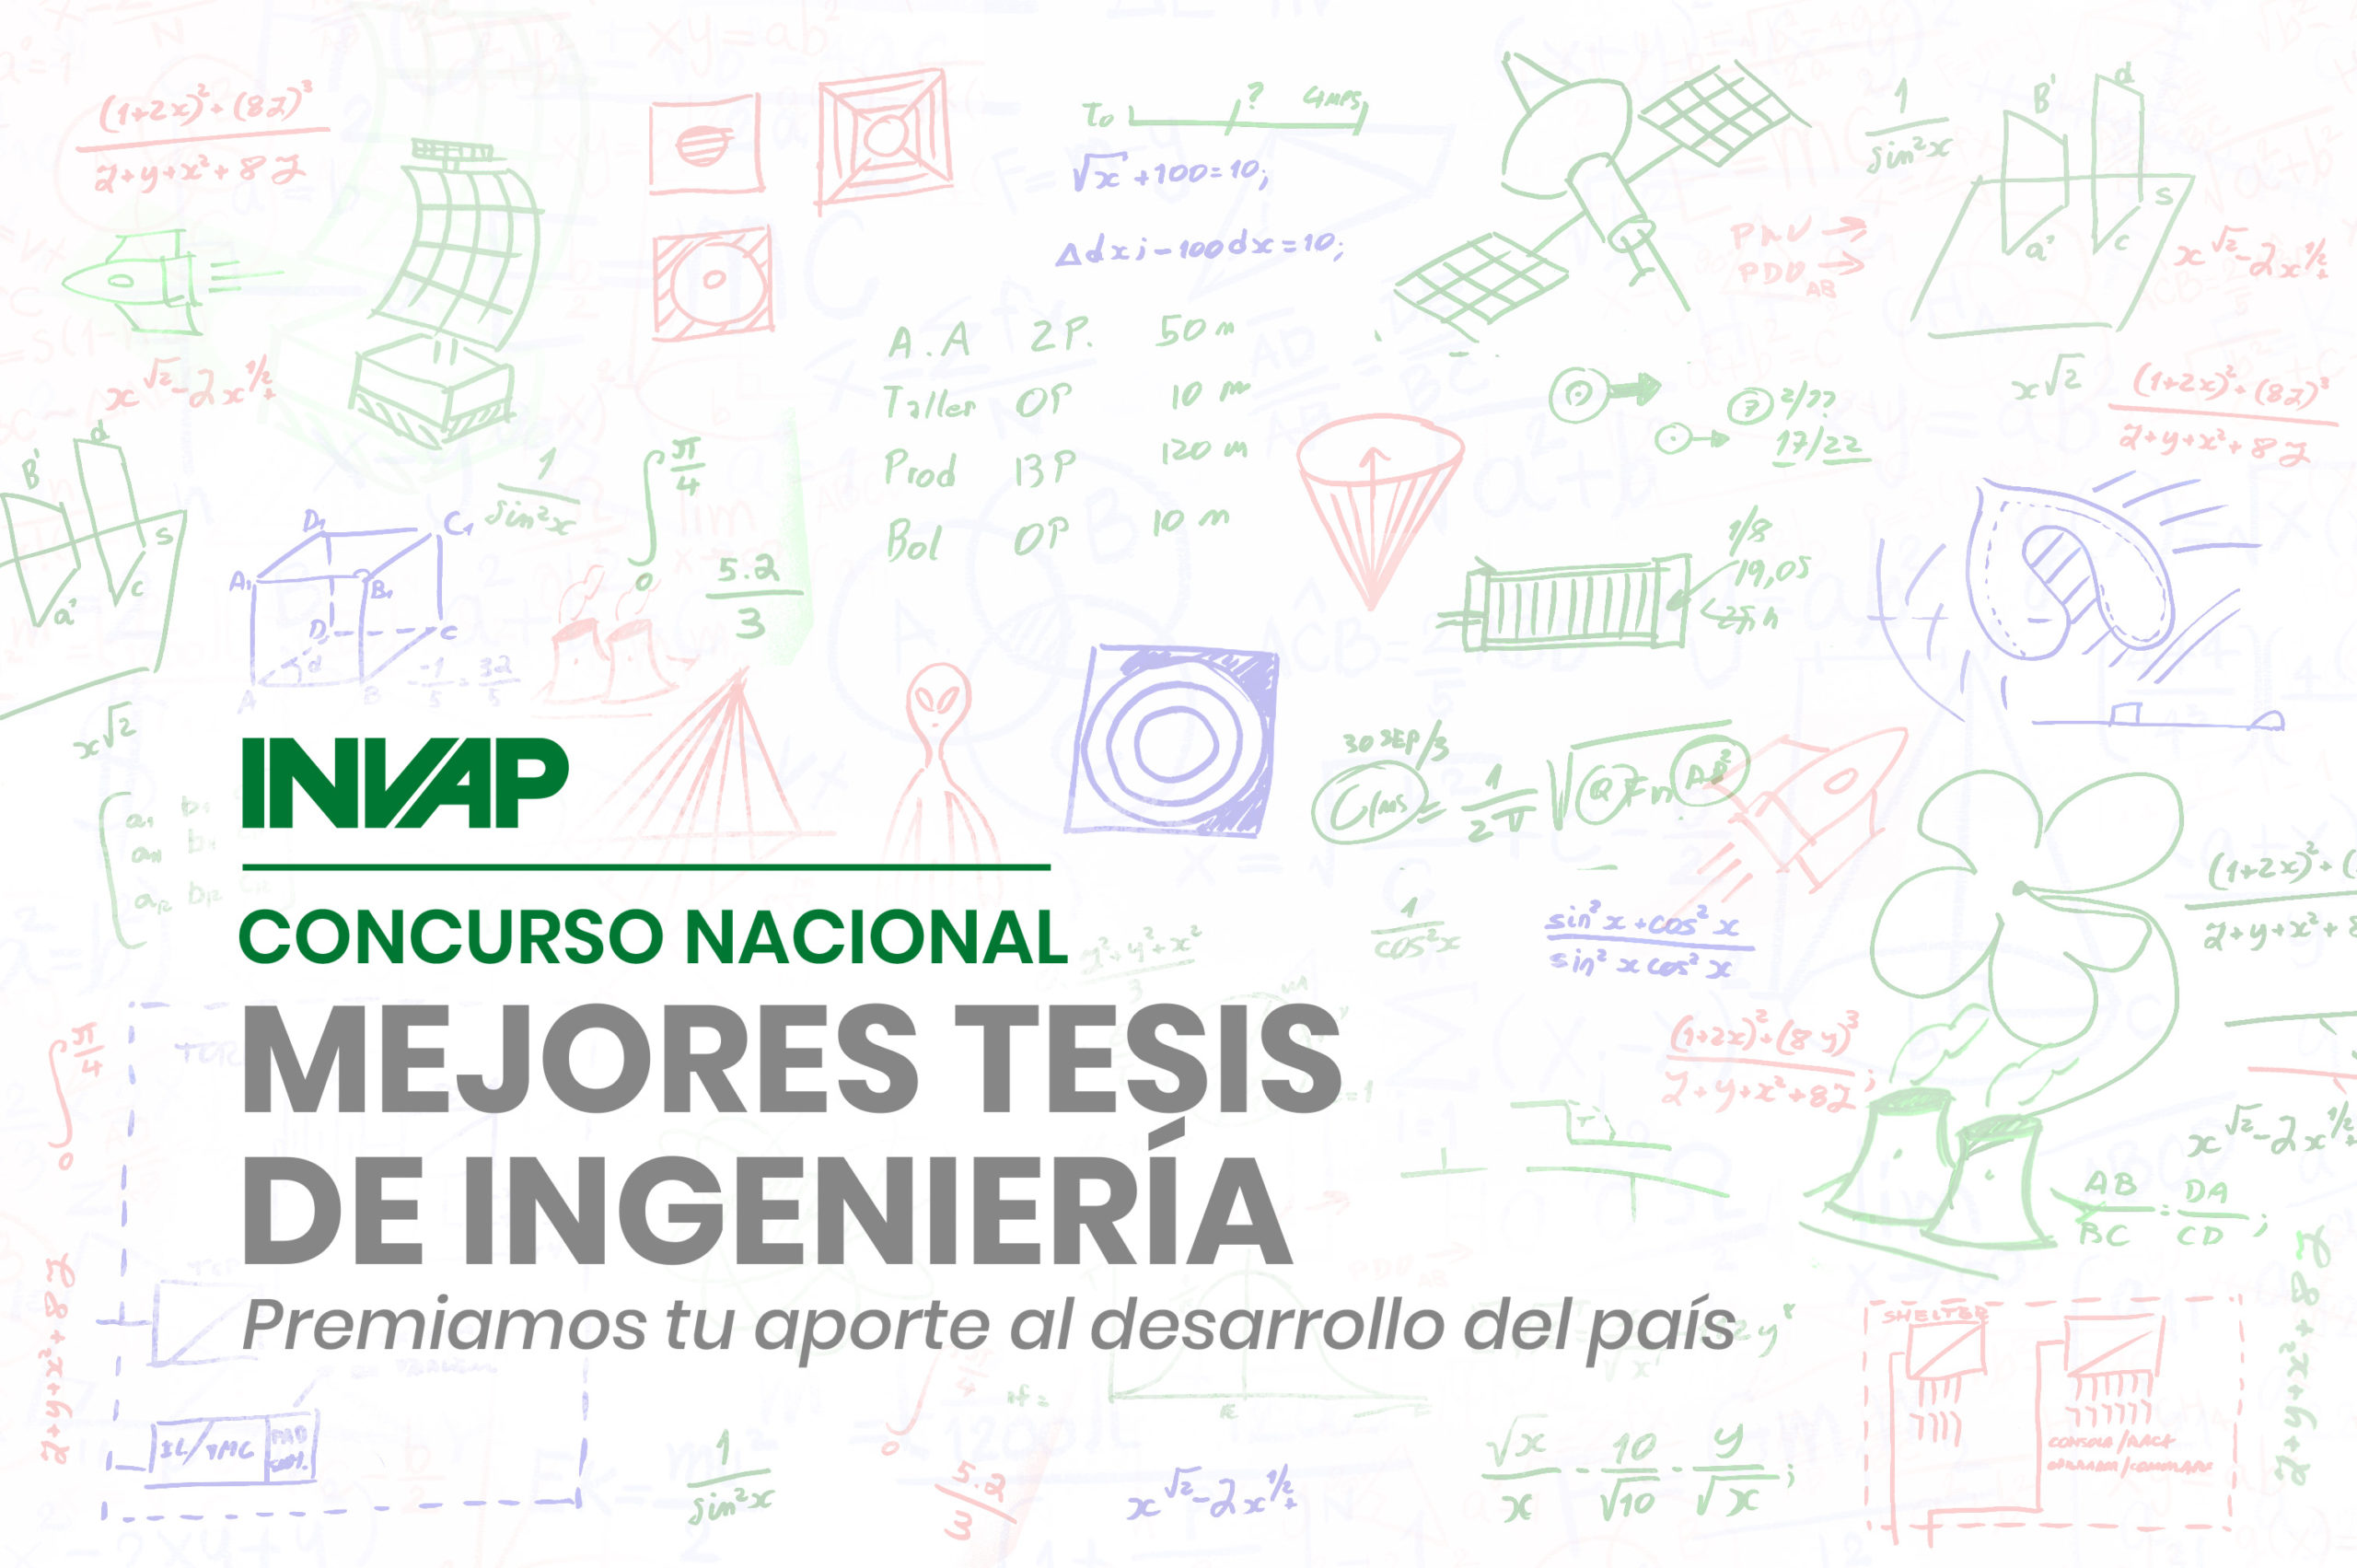 Invap premiará a las mejores tesis de ingeniería del país imagen-1